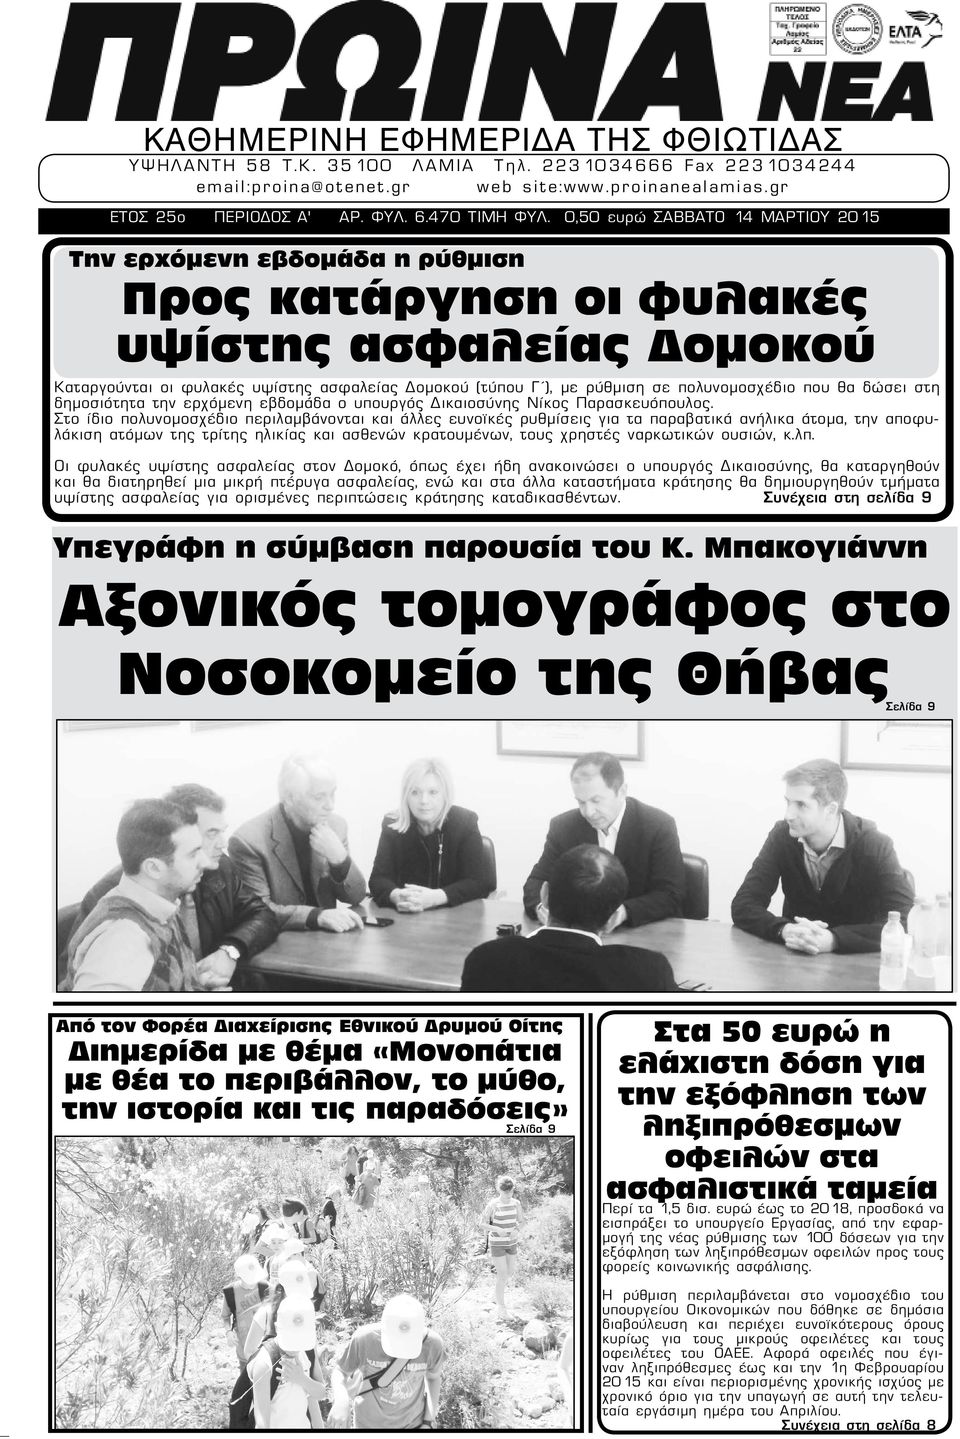 πολυνομοσχέδιο που θα δώσει στη δημοσιότητα την ερχόμενη εβδομάδα ο υπουργός Δικαιοσύνης Νίκος Παρασκευόπουλος.